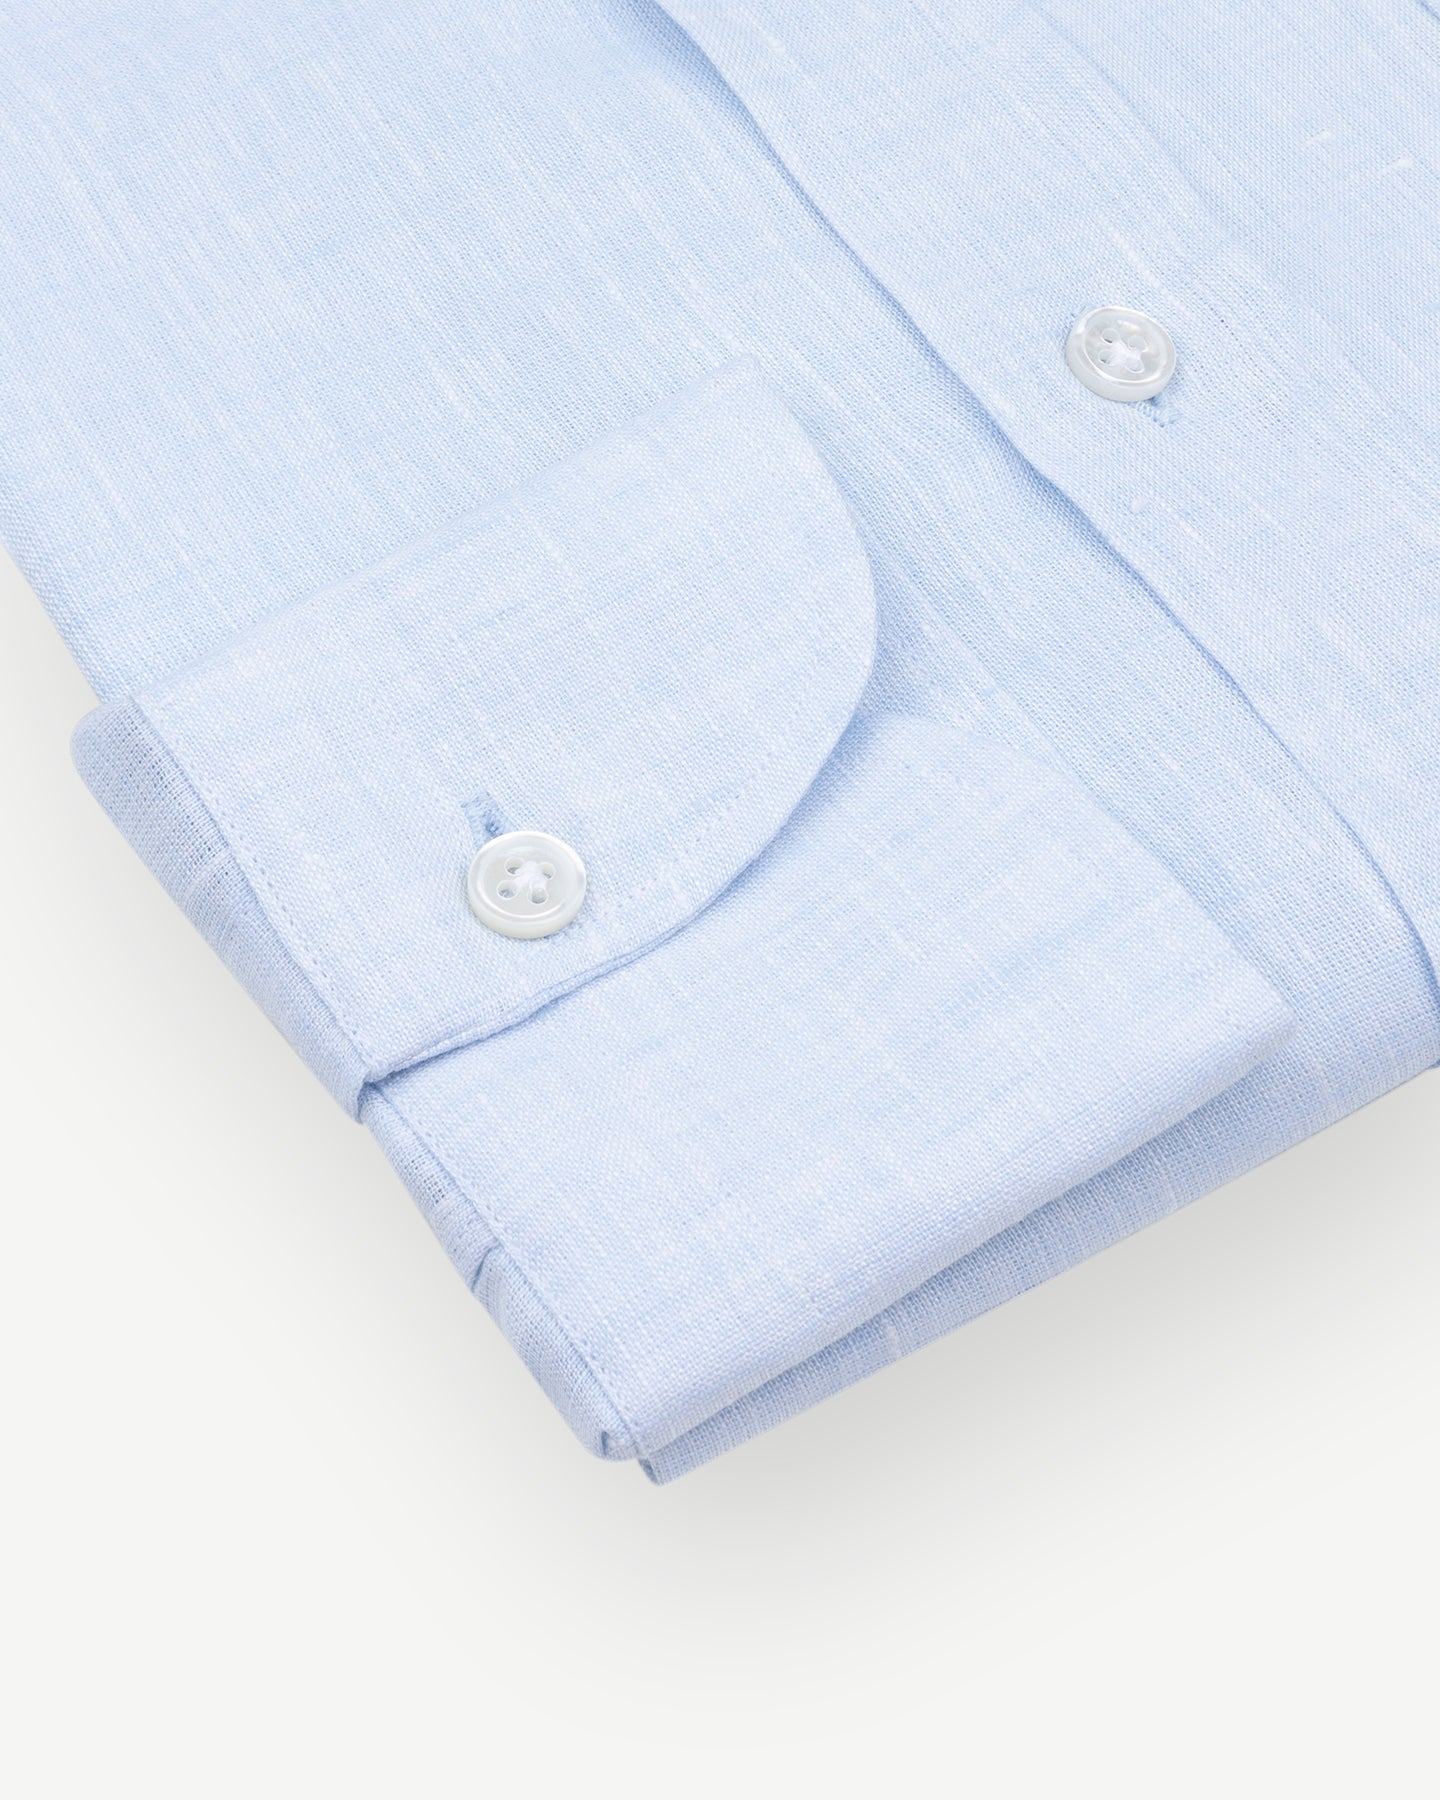 Light blue linen shirt with single cuffs